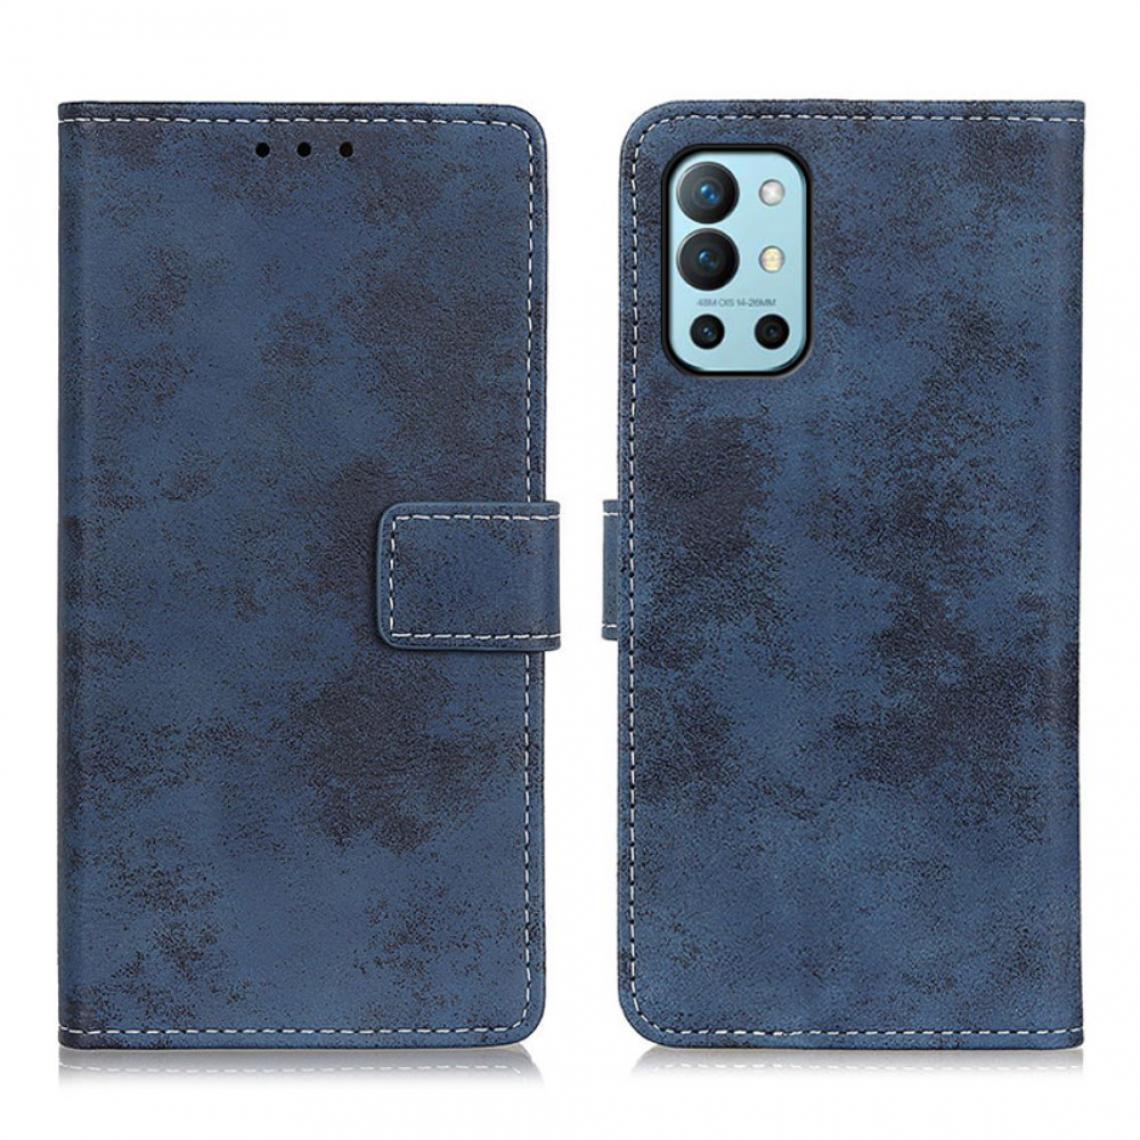 Other - Etui en PU Style vintage avec support bleu pour votre OnePlus 9R - Coque, étui smartphone